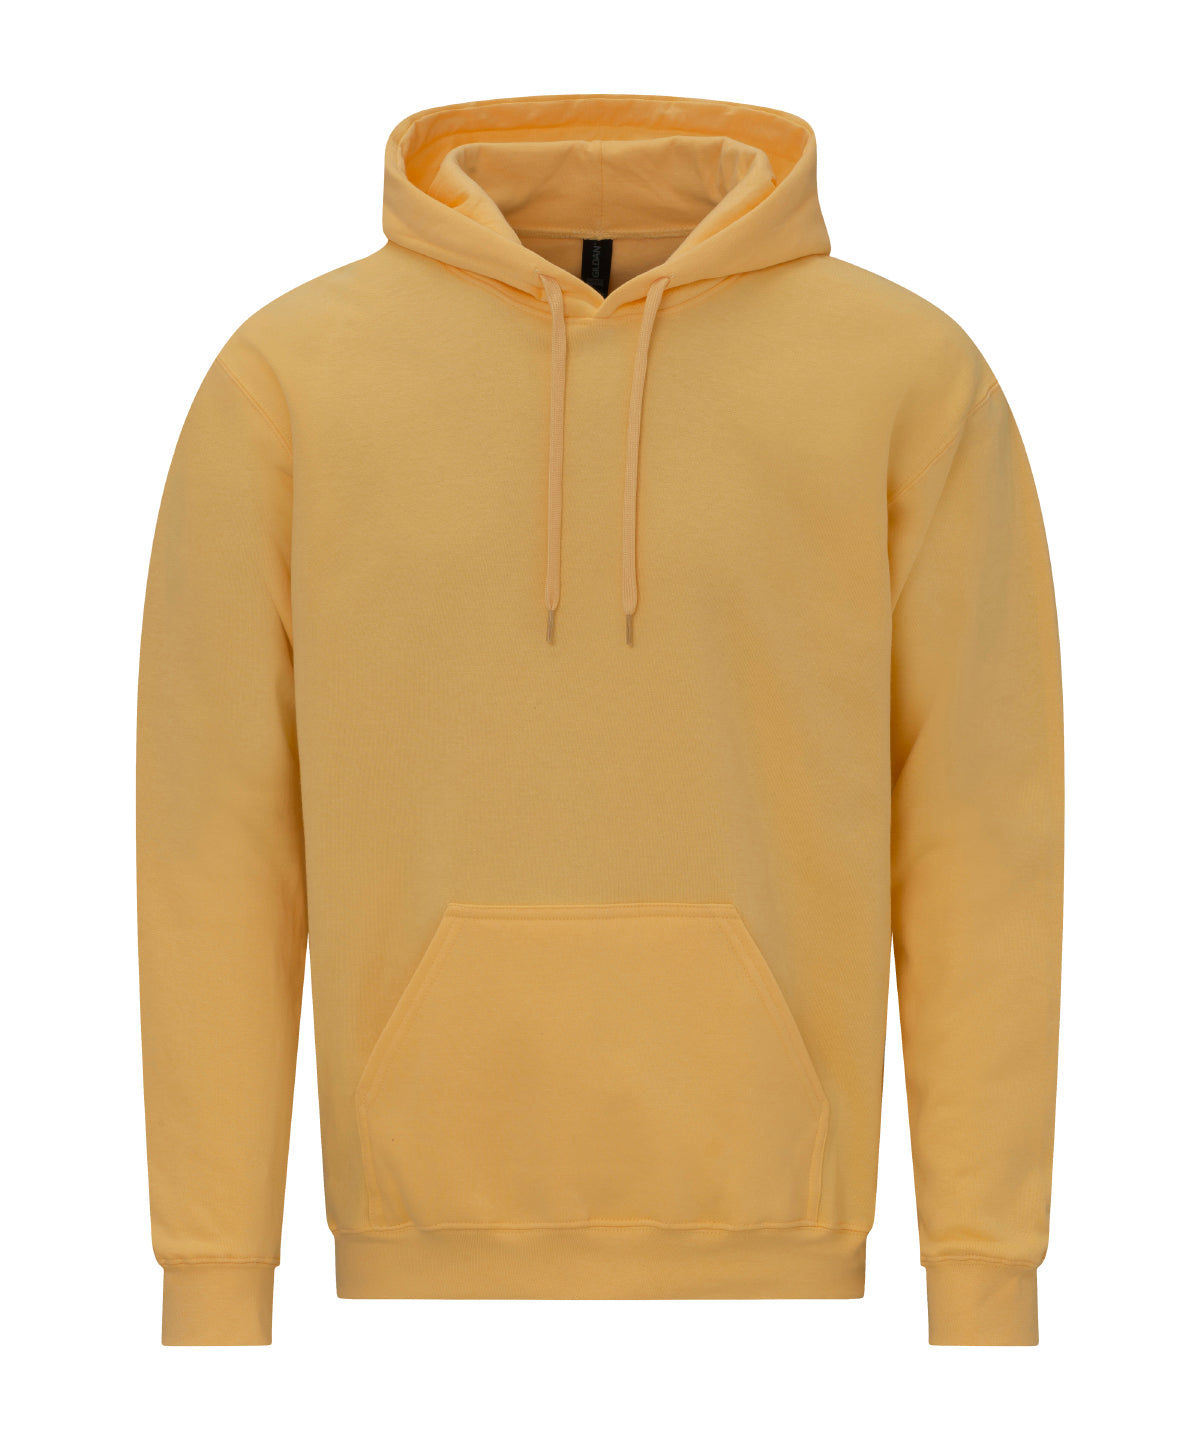 Gildan Softstyle midweight fleece adult hoodie Yellow Haze